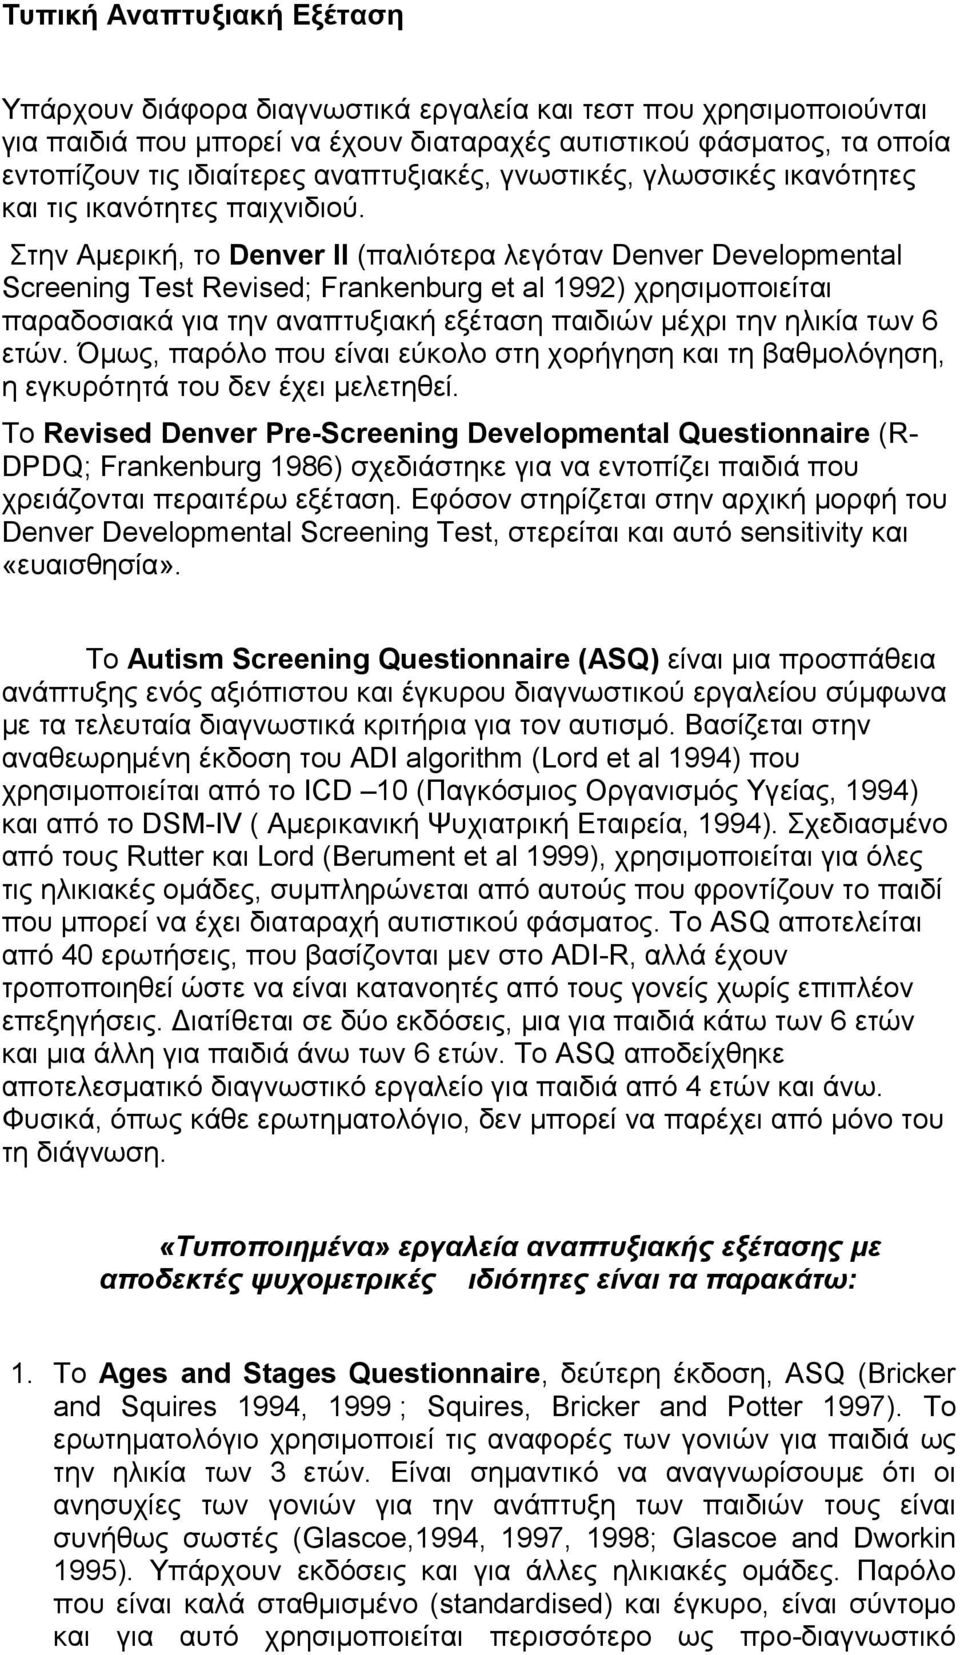 Στην Αμερική, το Denver II (παλιότερα λεγόταν Denver Developmental Screening Test Revised; Frankenburg et al 1992) χρησιμοποιείται παραδοσιακά για την αναπτυξιακή εξέταση παιδιών μέχρι την ηλικία των